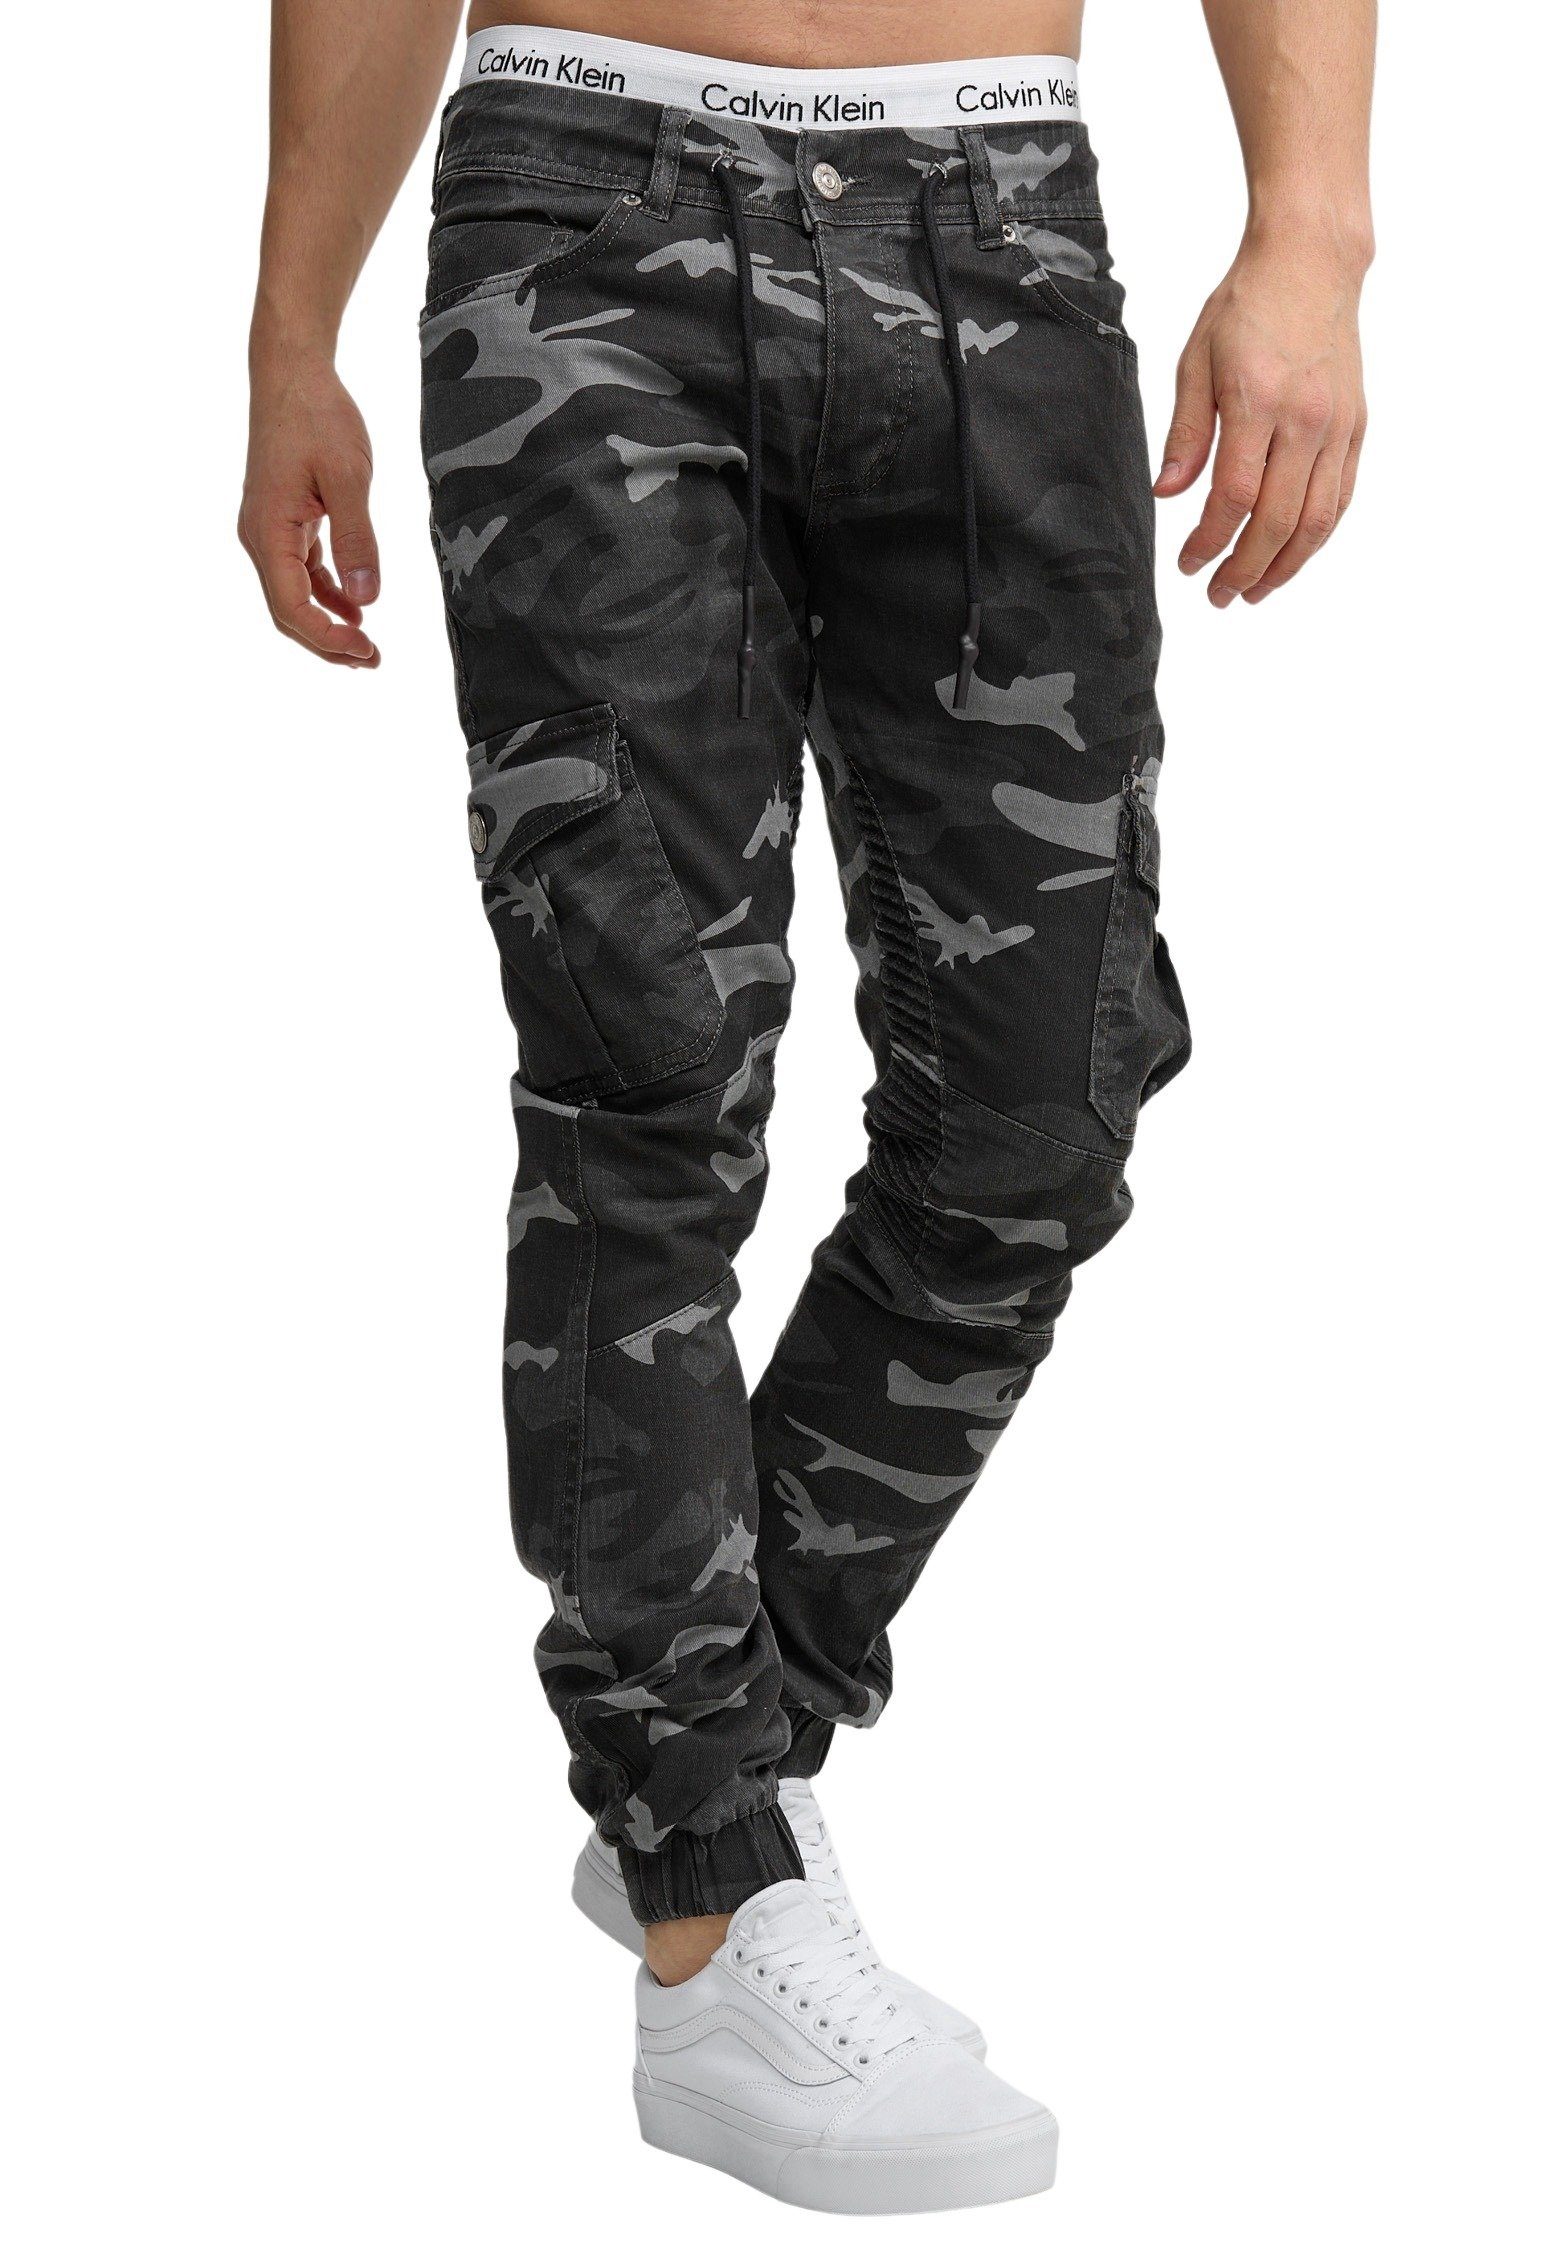 Code47 Slim-fit-Jeans Herren Chino Hose Jeans Designer Chinohose Slim Fit Männer Slim 3207C Schwarz Camouflage